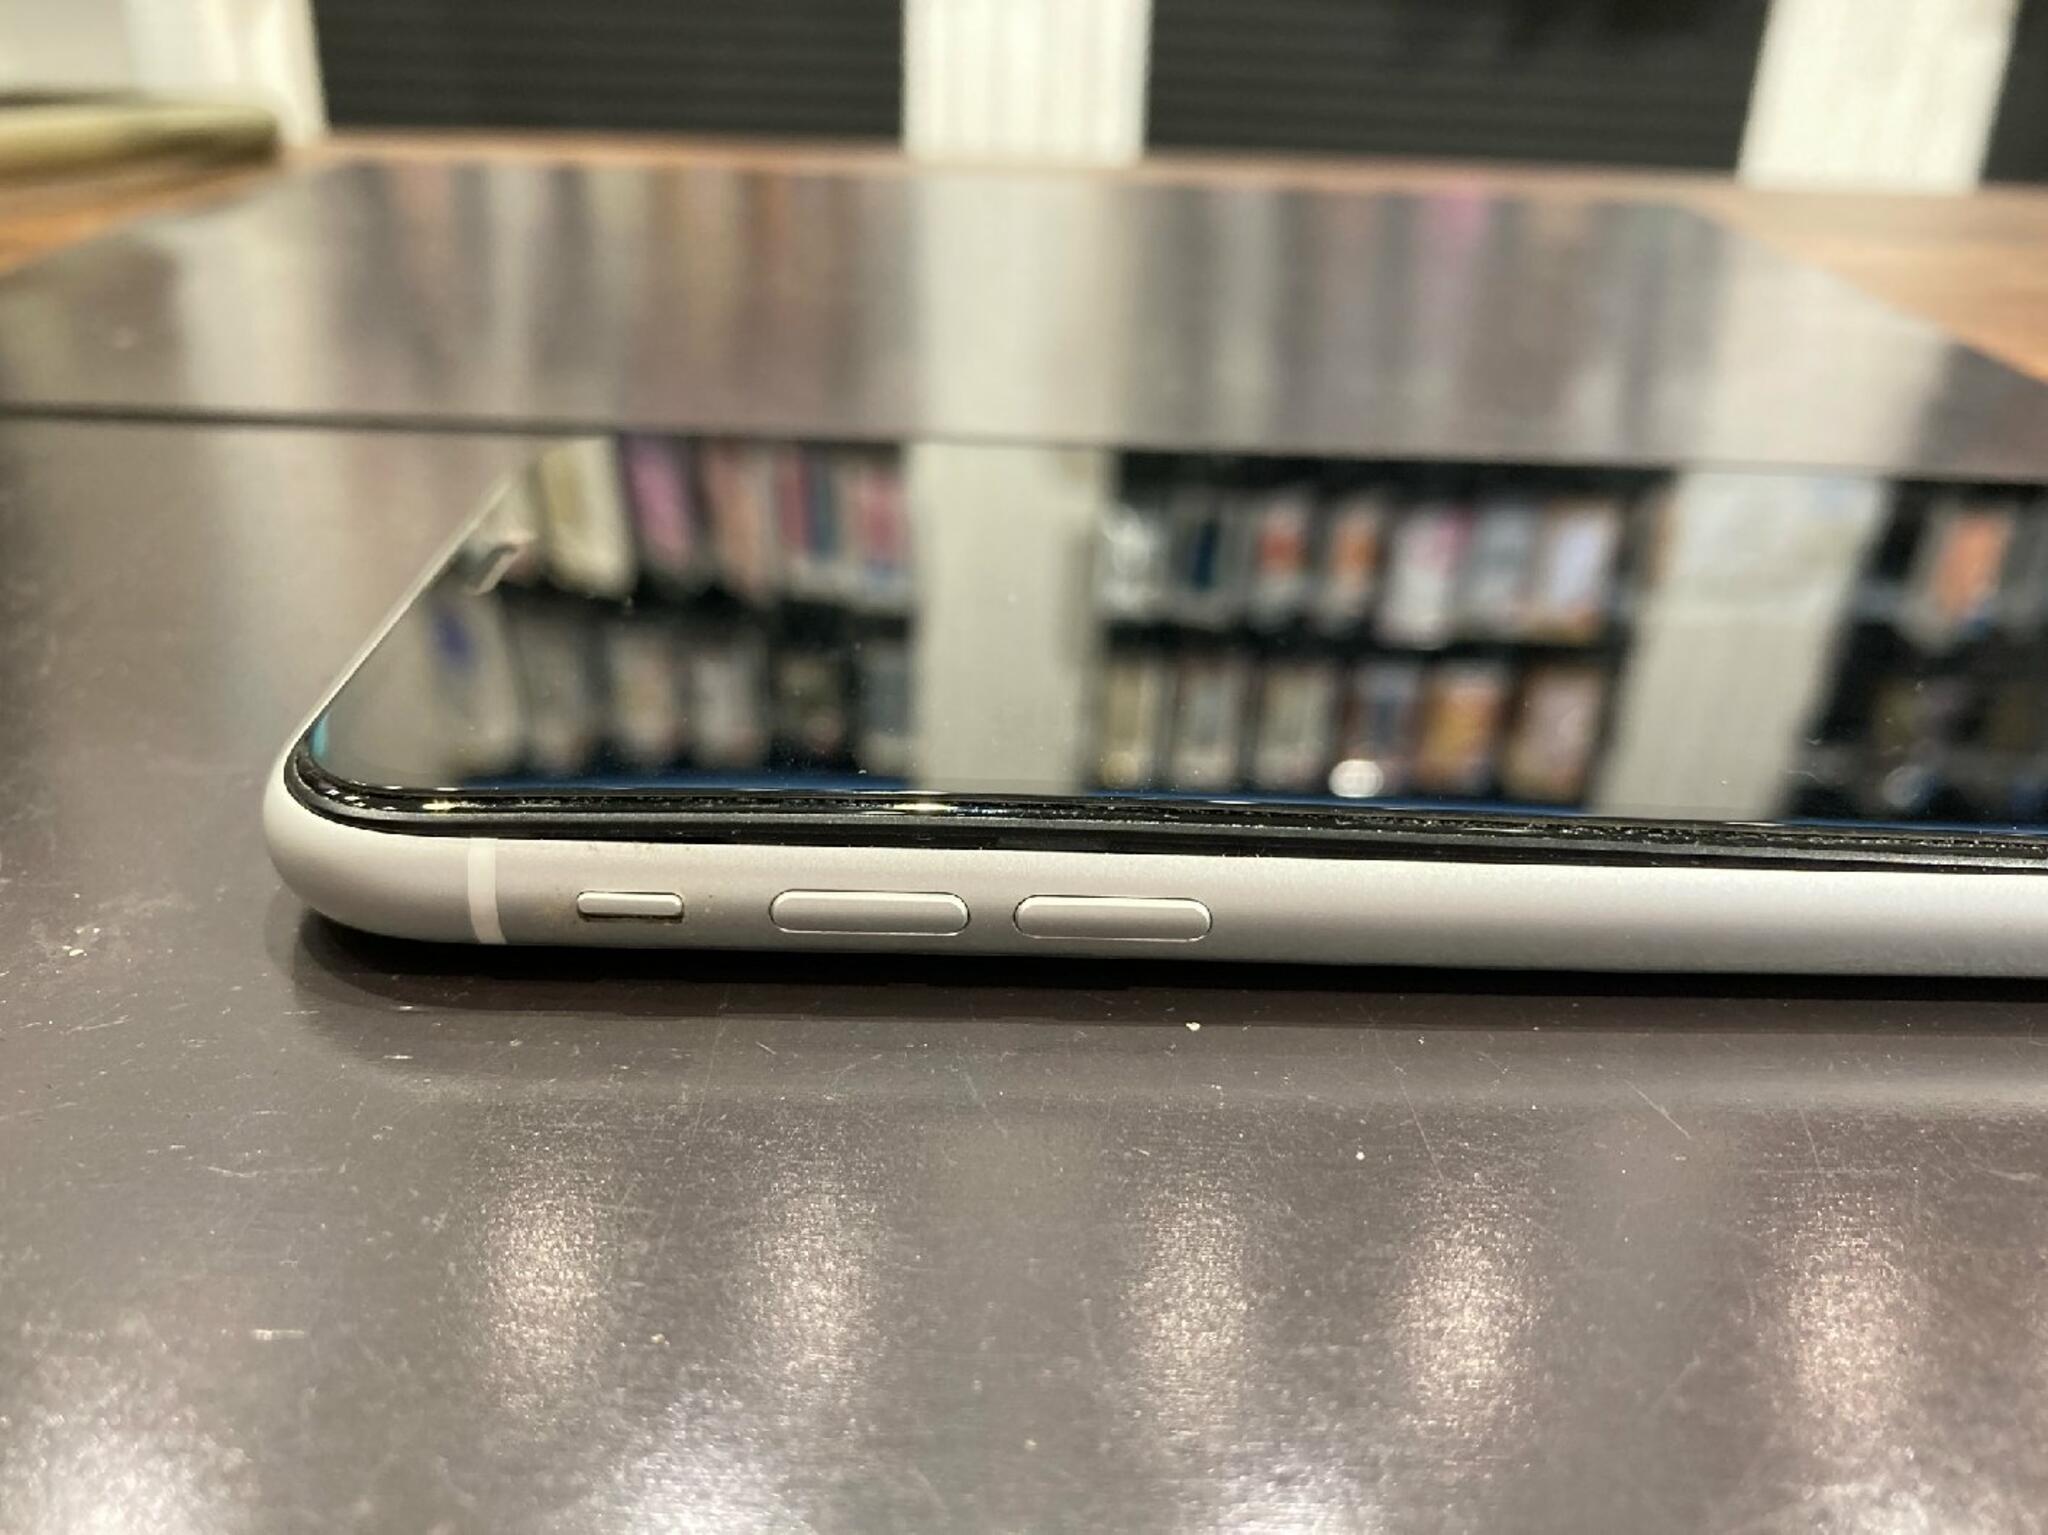 iPhone・iPad・Switch修理店 スマートクール イオンモール広島祇園店からのお知らせ( バッテリー が膨張していたら早急にバッテリー交換をしましょう！！ )に関する写真